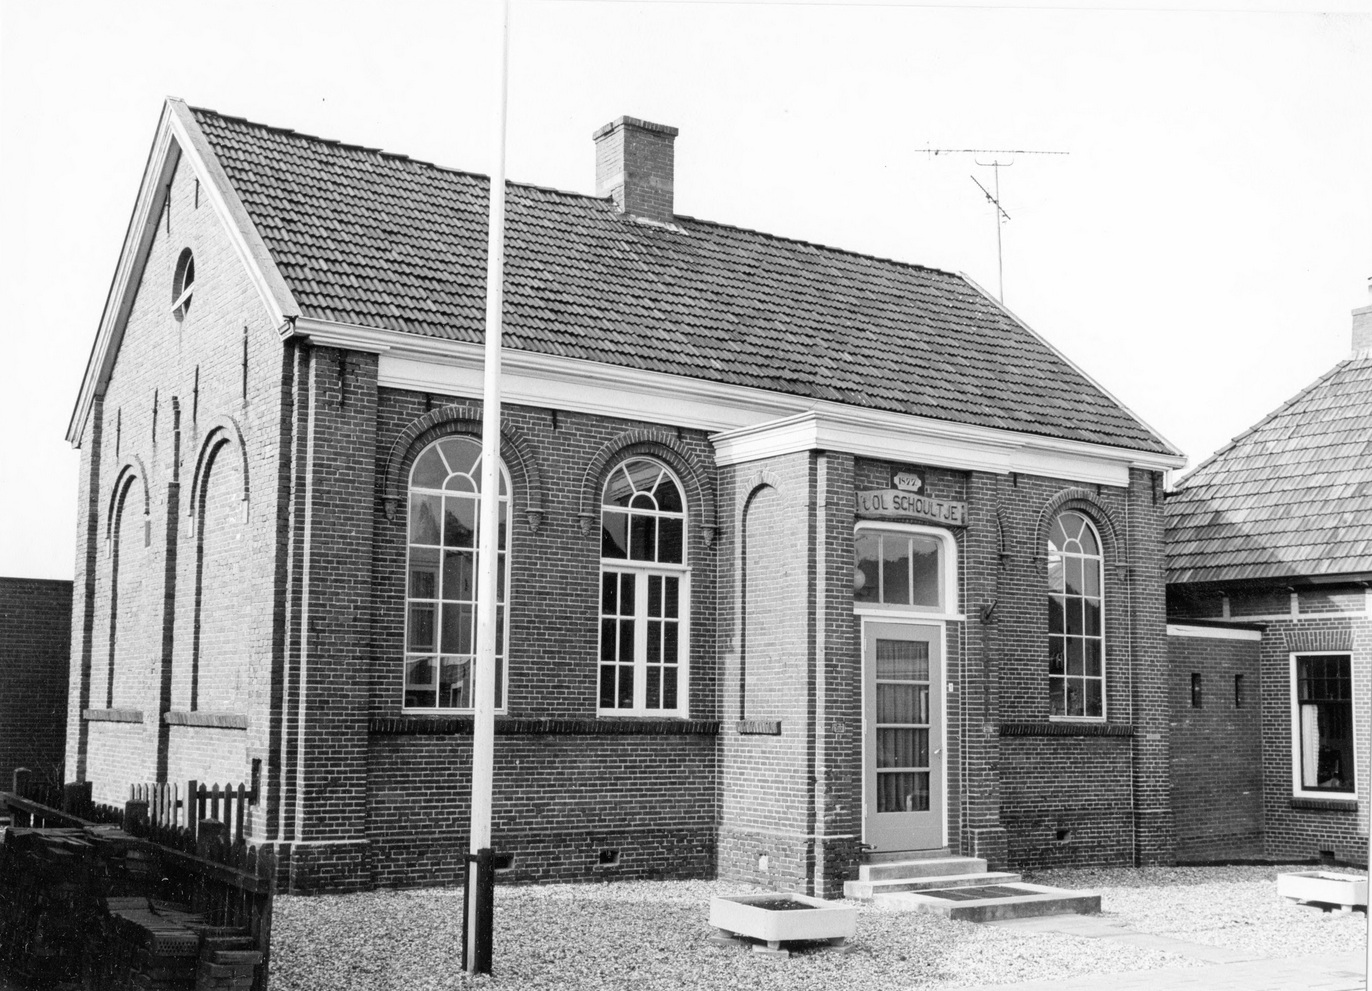 Foto: Torenstraat 1, 't ol Schoultje, foto: Bob van Zalm, 1960-1970. Bron: RHC GA, Groninger Archieven, Beeldbank Groningen.